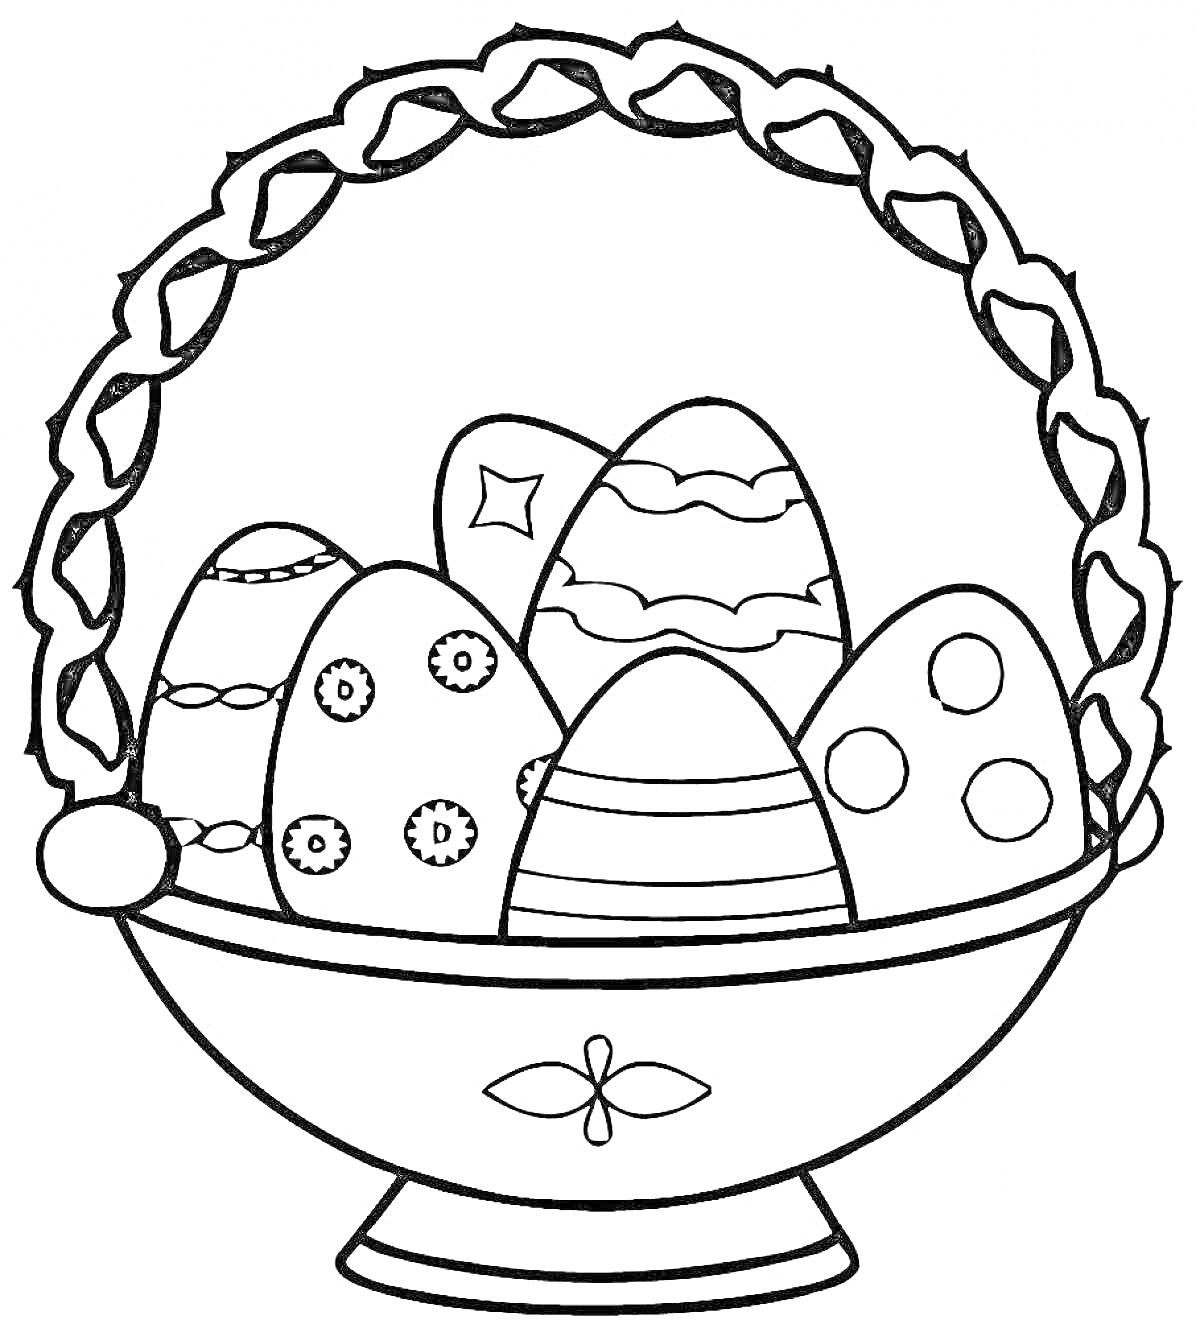 Раскраска Корзина с пасхальными яйцами с узорами